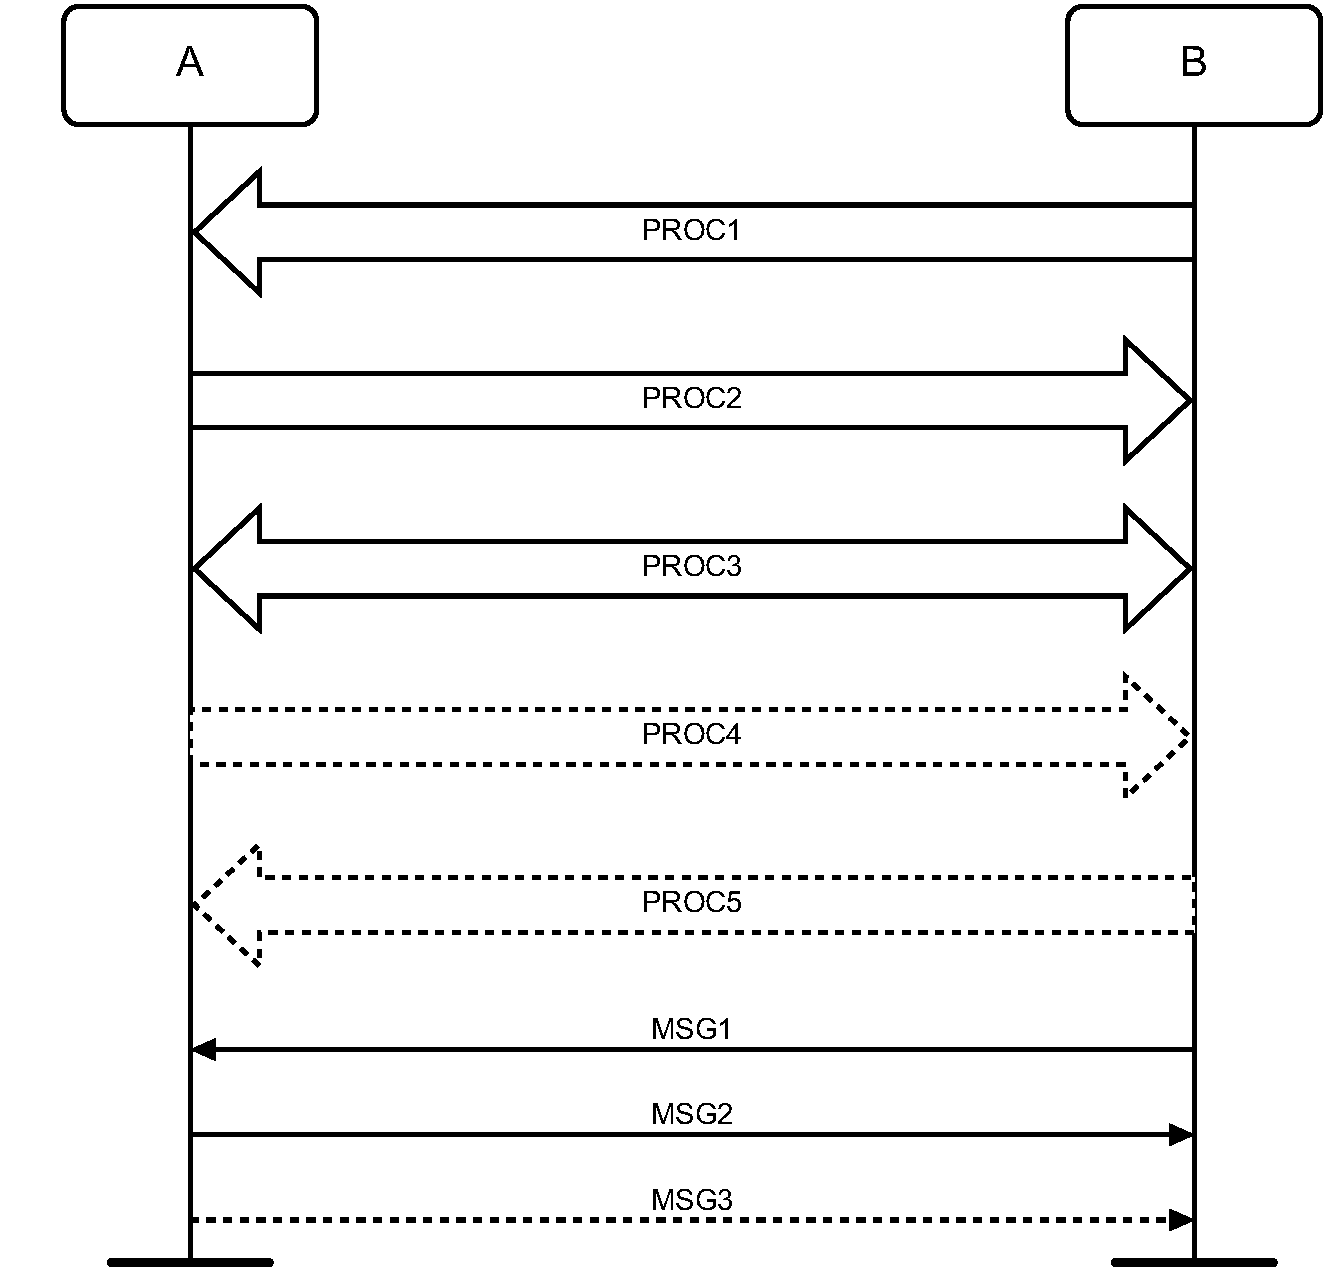 Arrows used in signaling diagrams